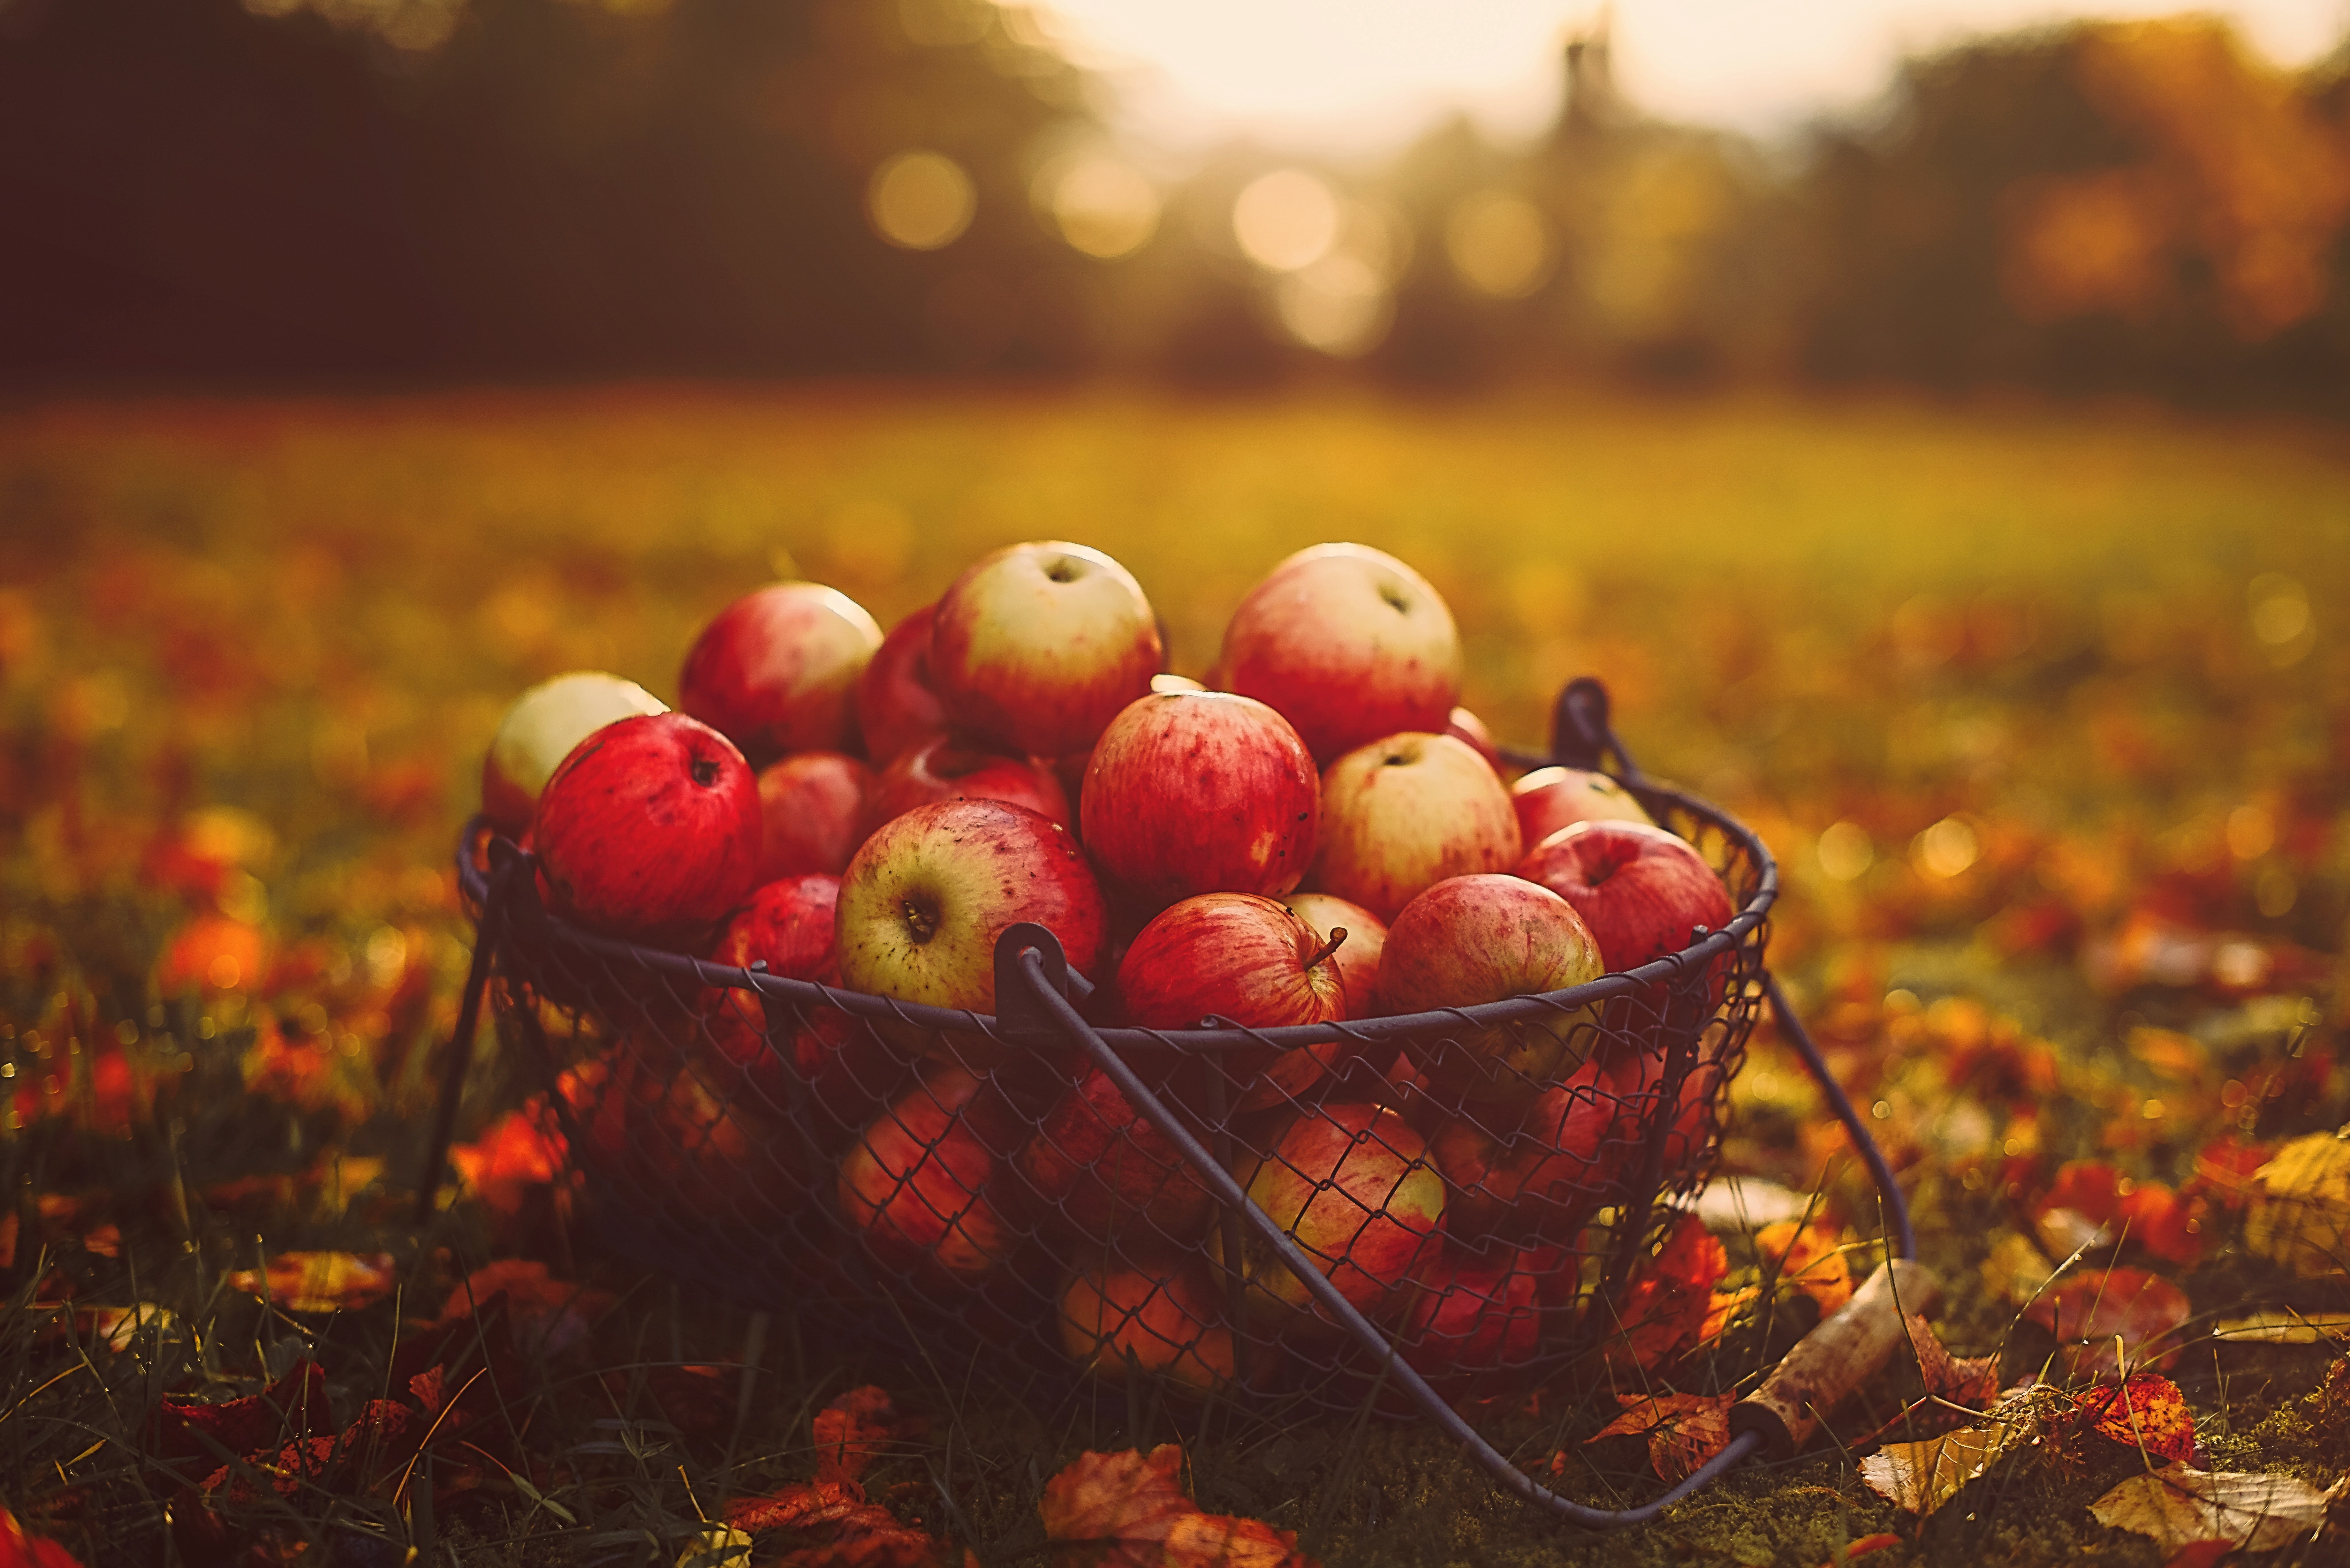 apples, food, autumn, basket, harvest